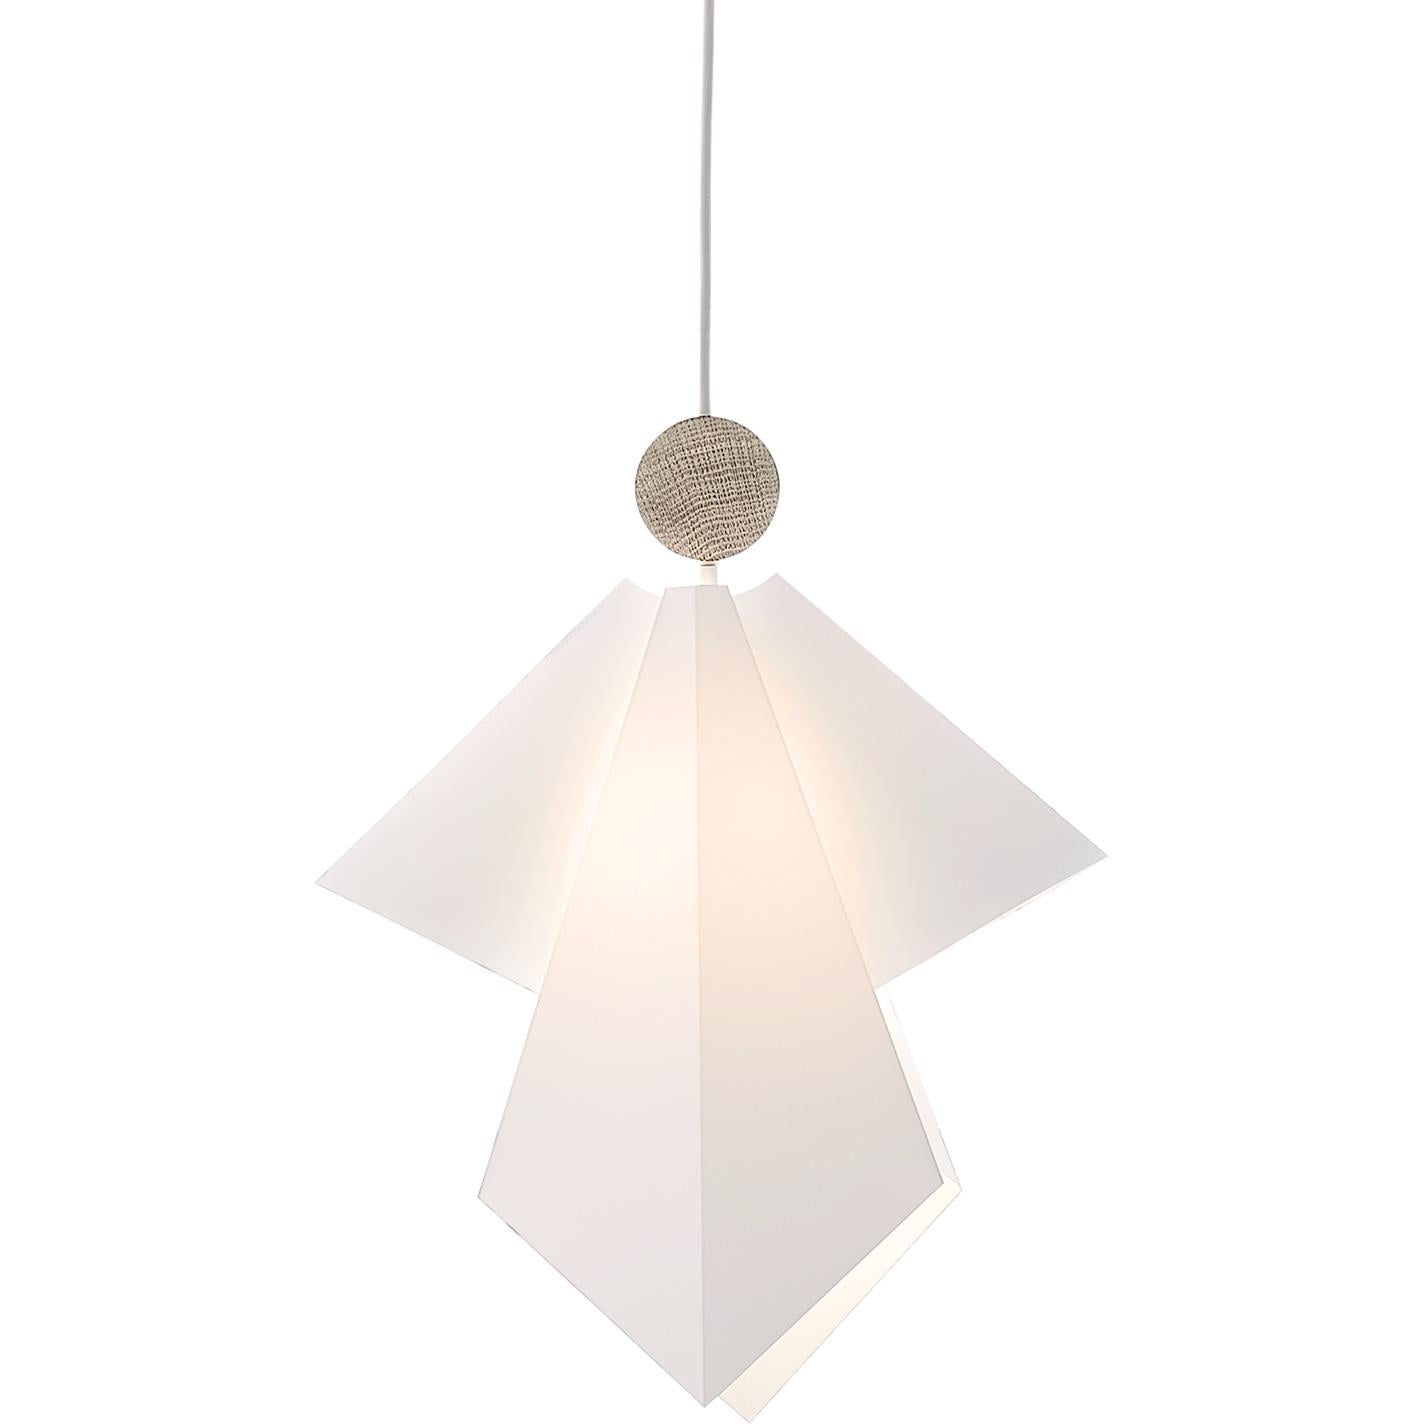 LE KLINT Gabriel Engel hanger lamp, XS